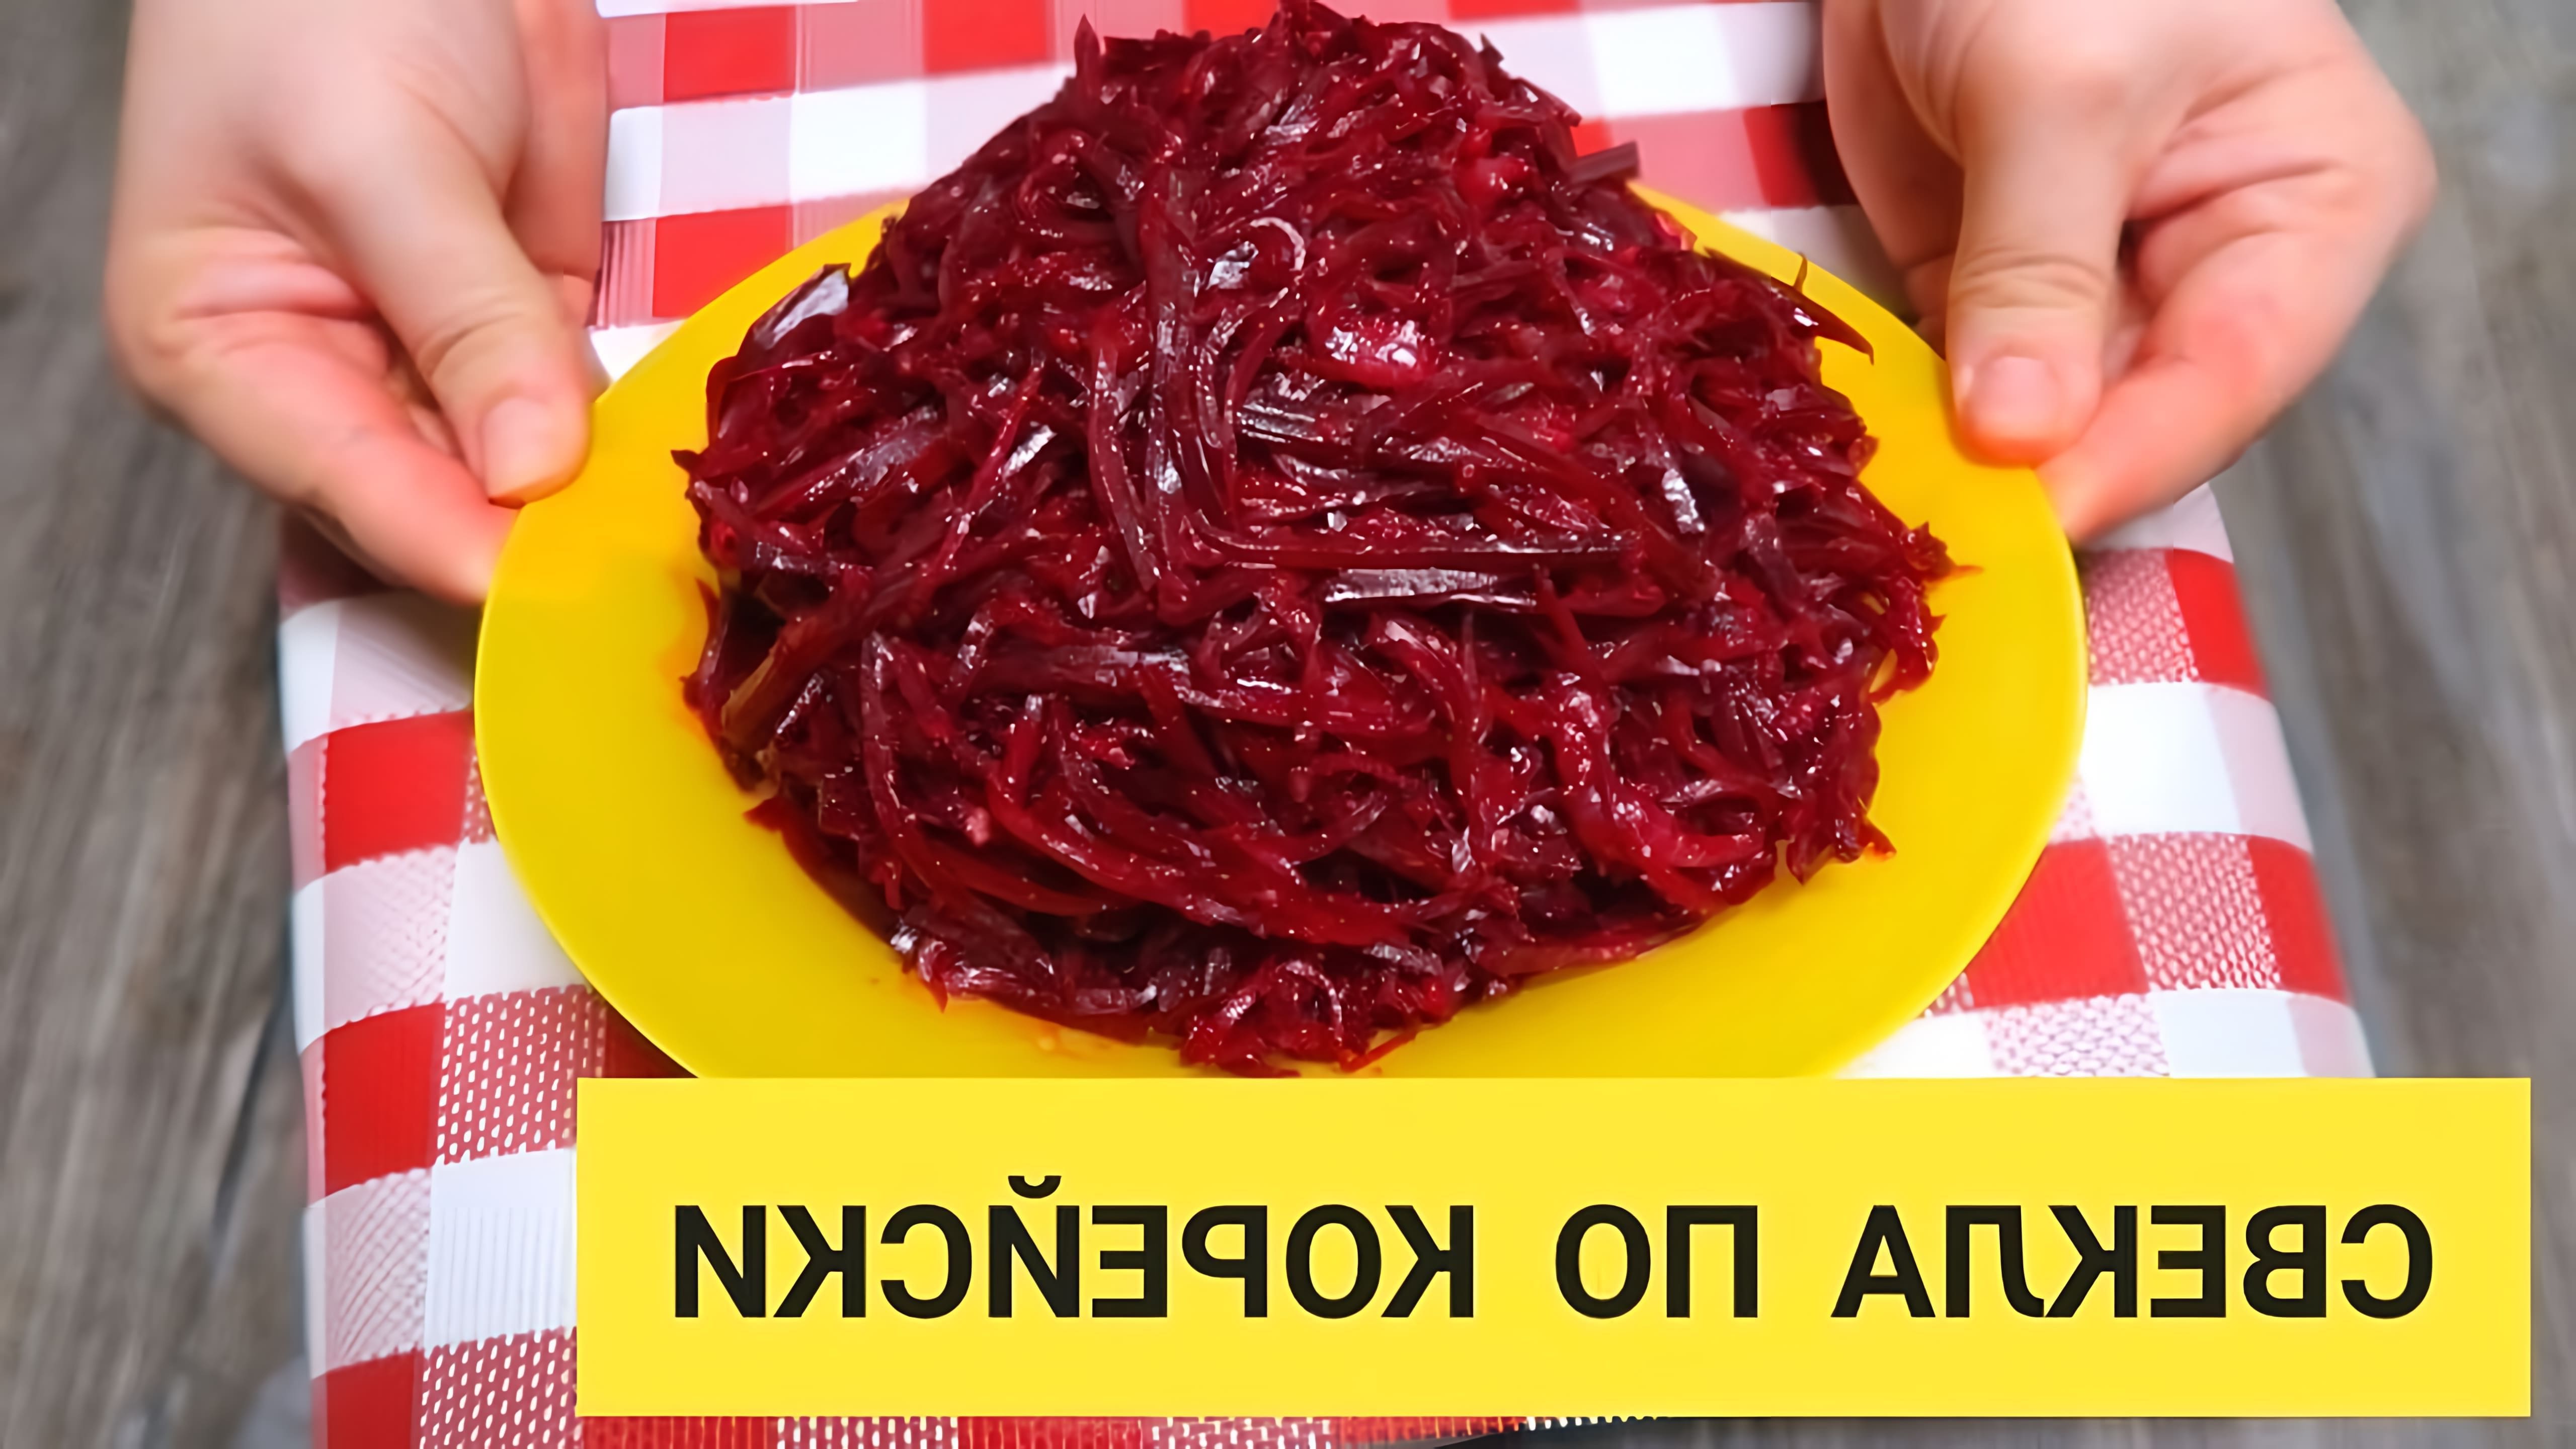 В этом видео демонстрируется процесс приготовления салата из свеклы по-корейски